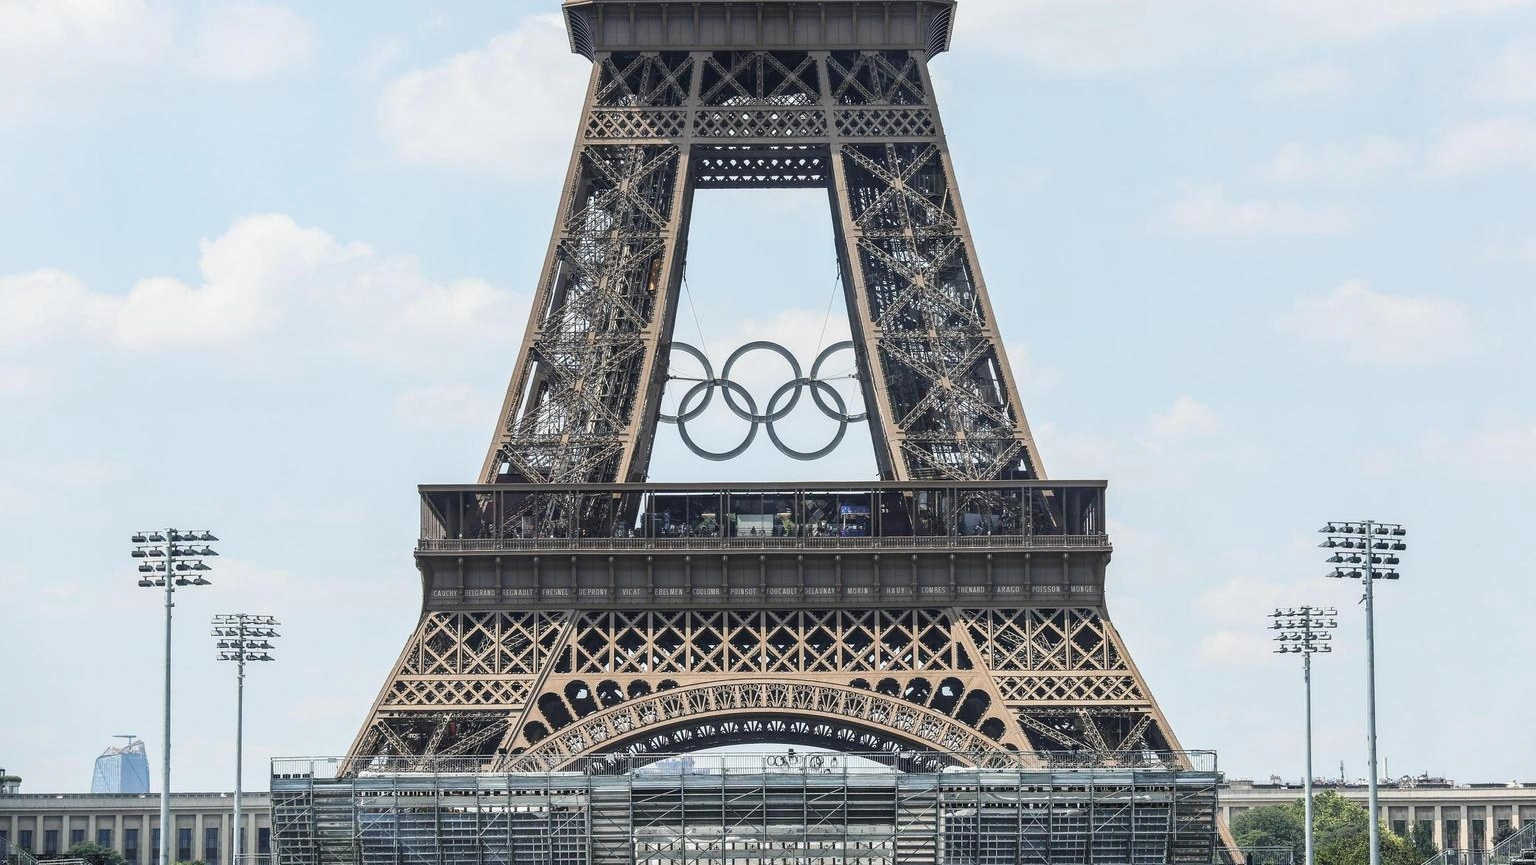 Le Olimpiadi di Parigi 2024 porteranno milioni di visitatori internazionali, stimolando il turismo e migliorando le infrastrutture urbane